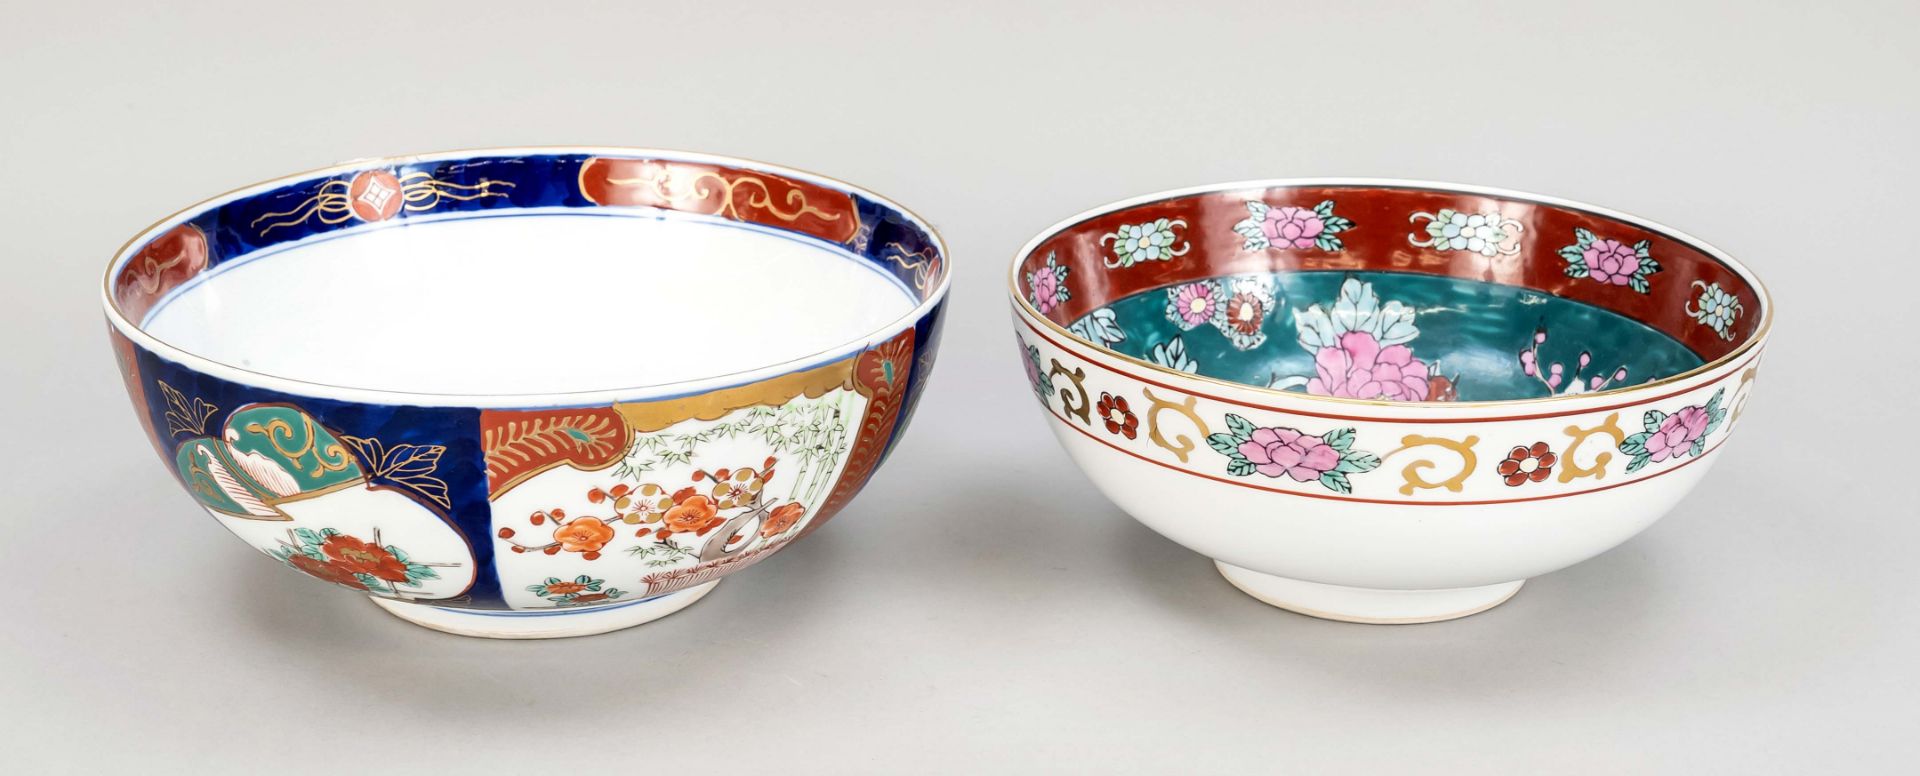 2 Imari bowls, Japan, 20th c., d. 25 & 28 cm - Image 2 of 2